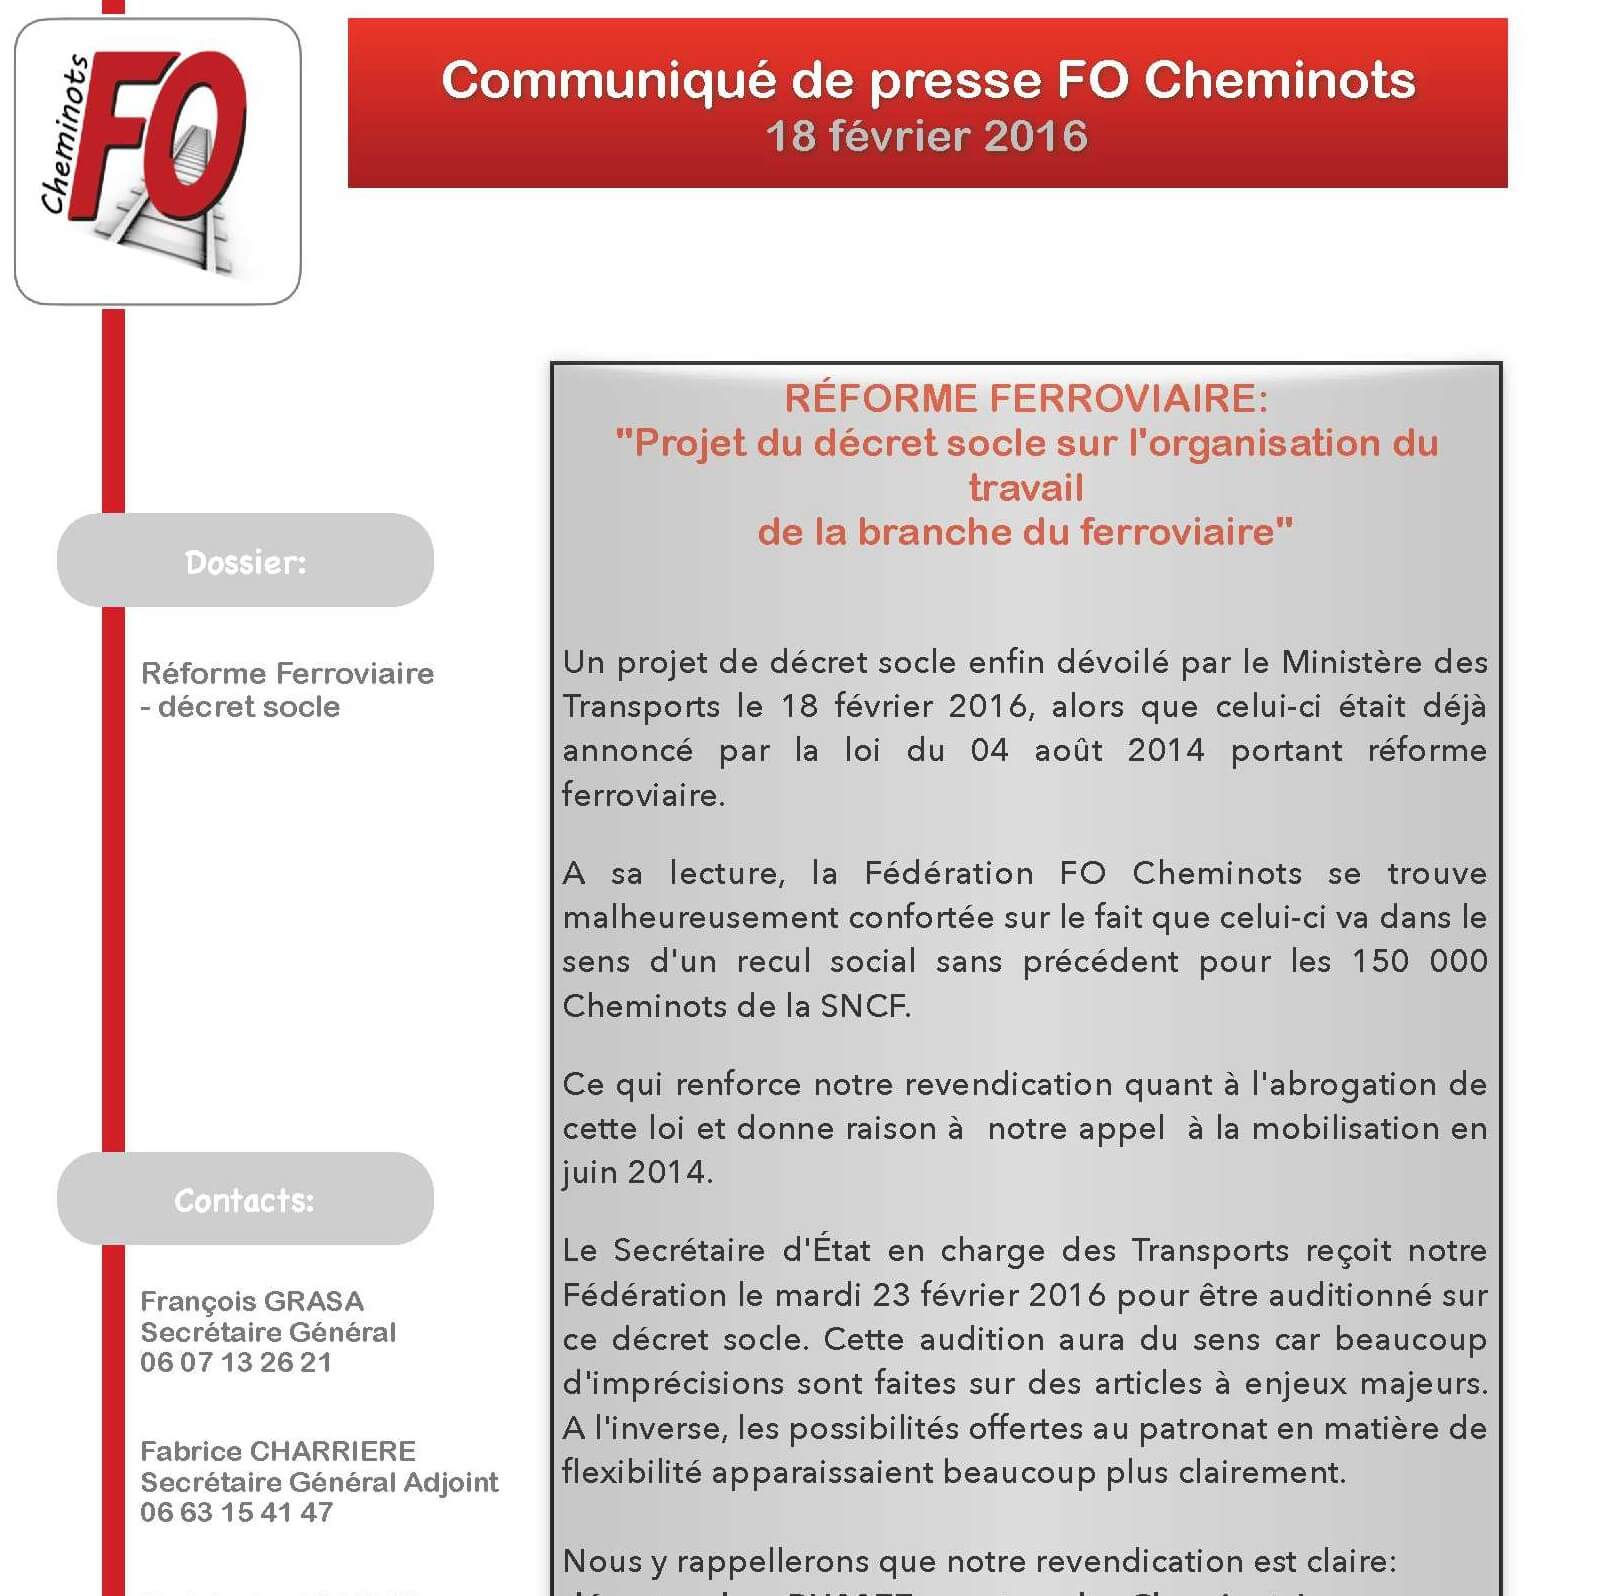 Communiqué de la Fédération FO des Cheminots du 19 février 2016 sur le projet de décret socle